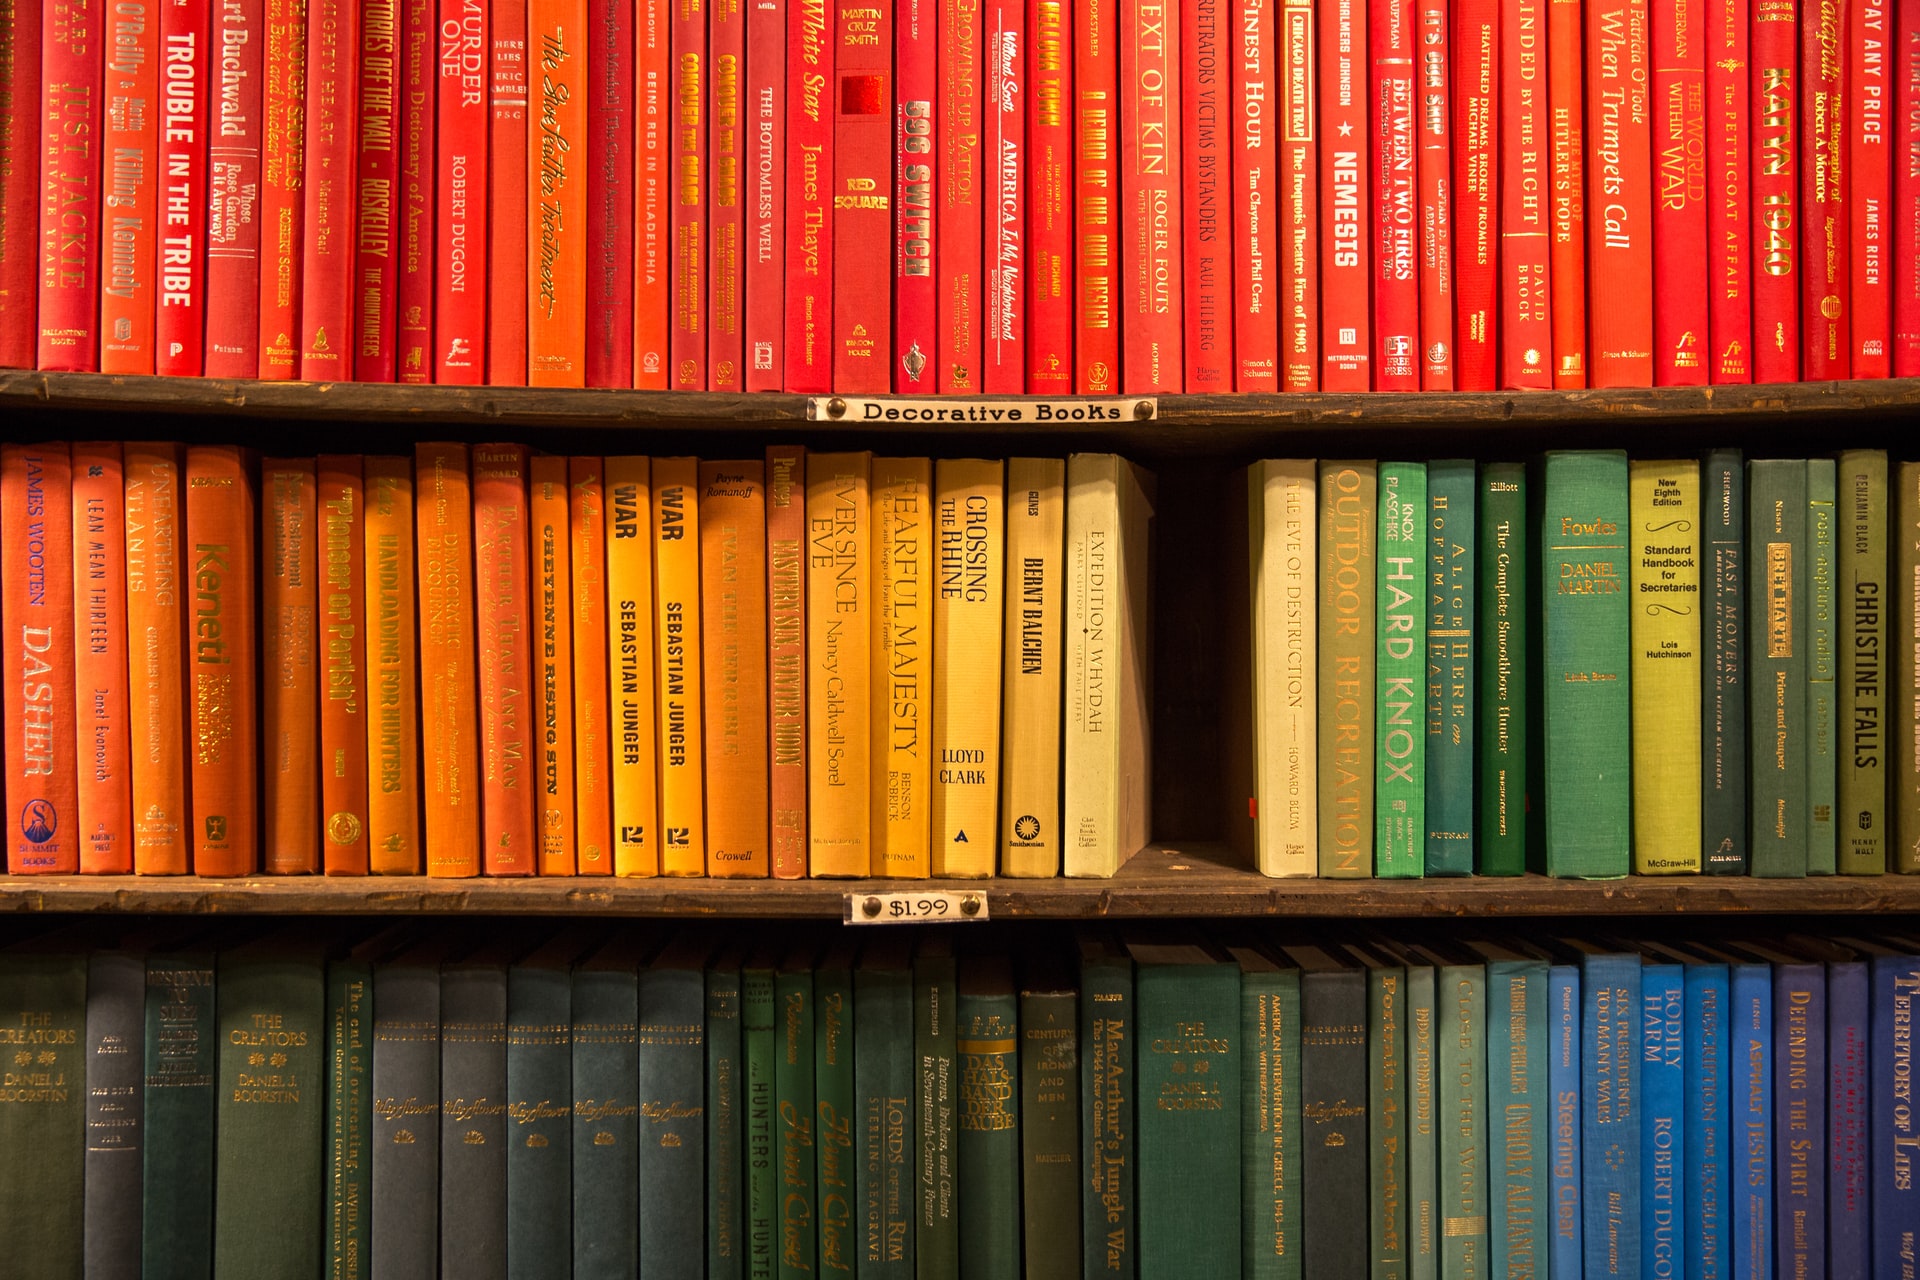 image of bookshelf full of books